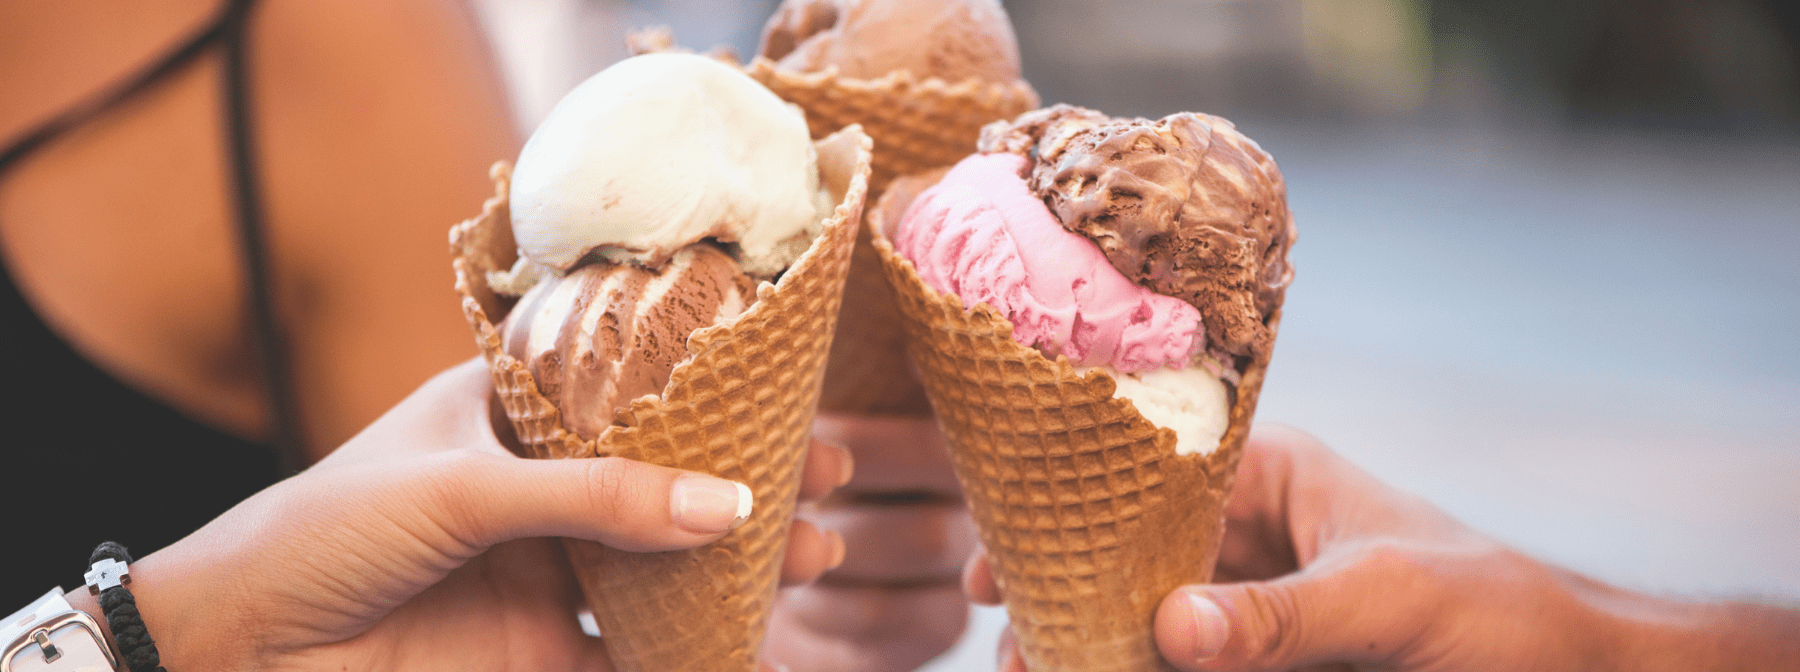 Healthier Ice Cream Bars | Frozen Dessert